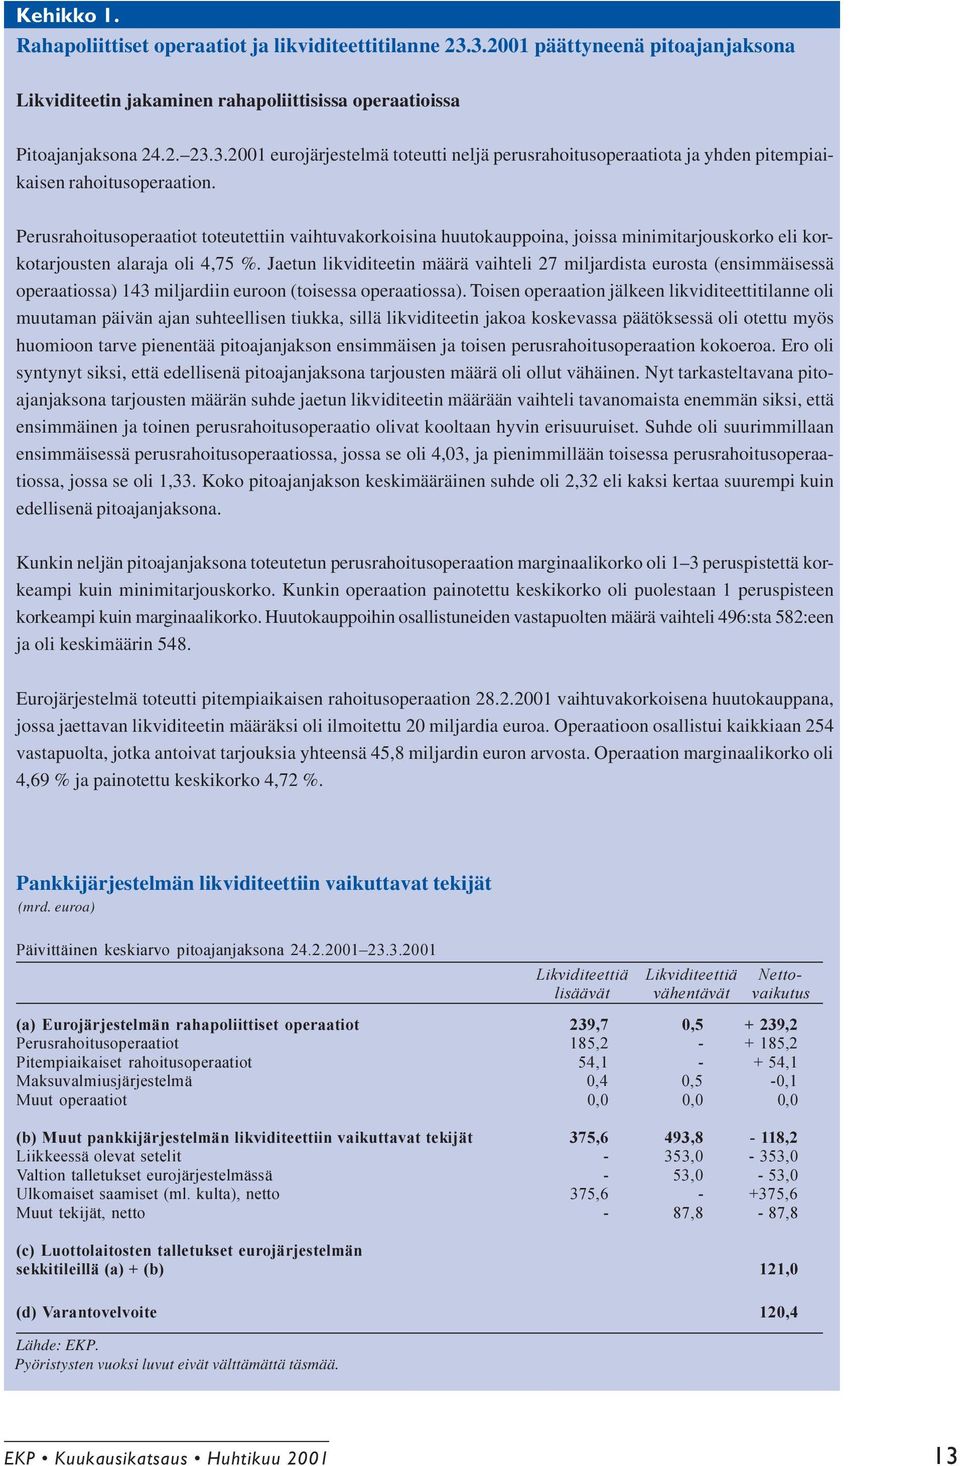 Jaetun likviditeetin määrä vaihteli 27 miljardista eurosta (ensimmäisessä operaatiossa) 143 miljardiin euroon (toisessa operaatiossa).